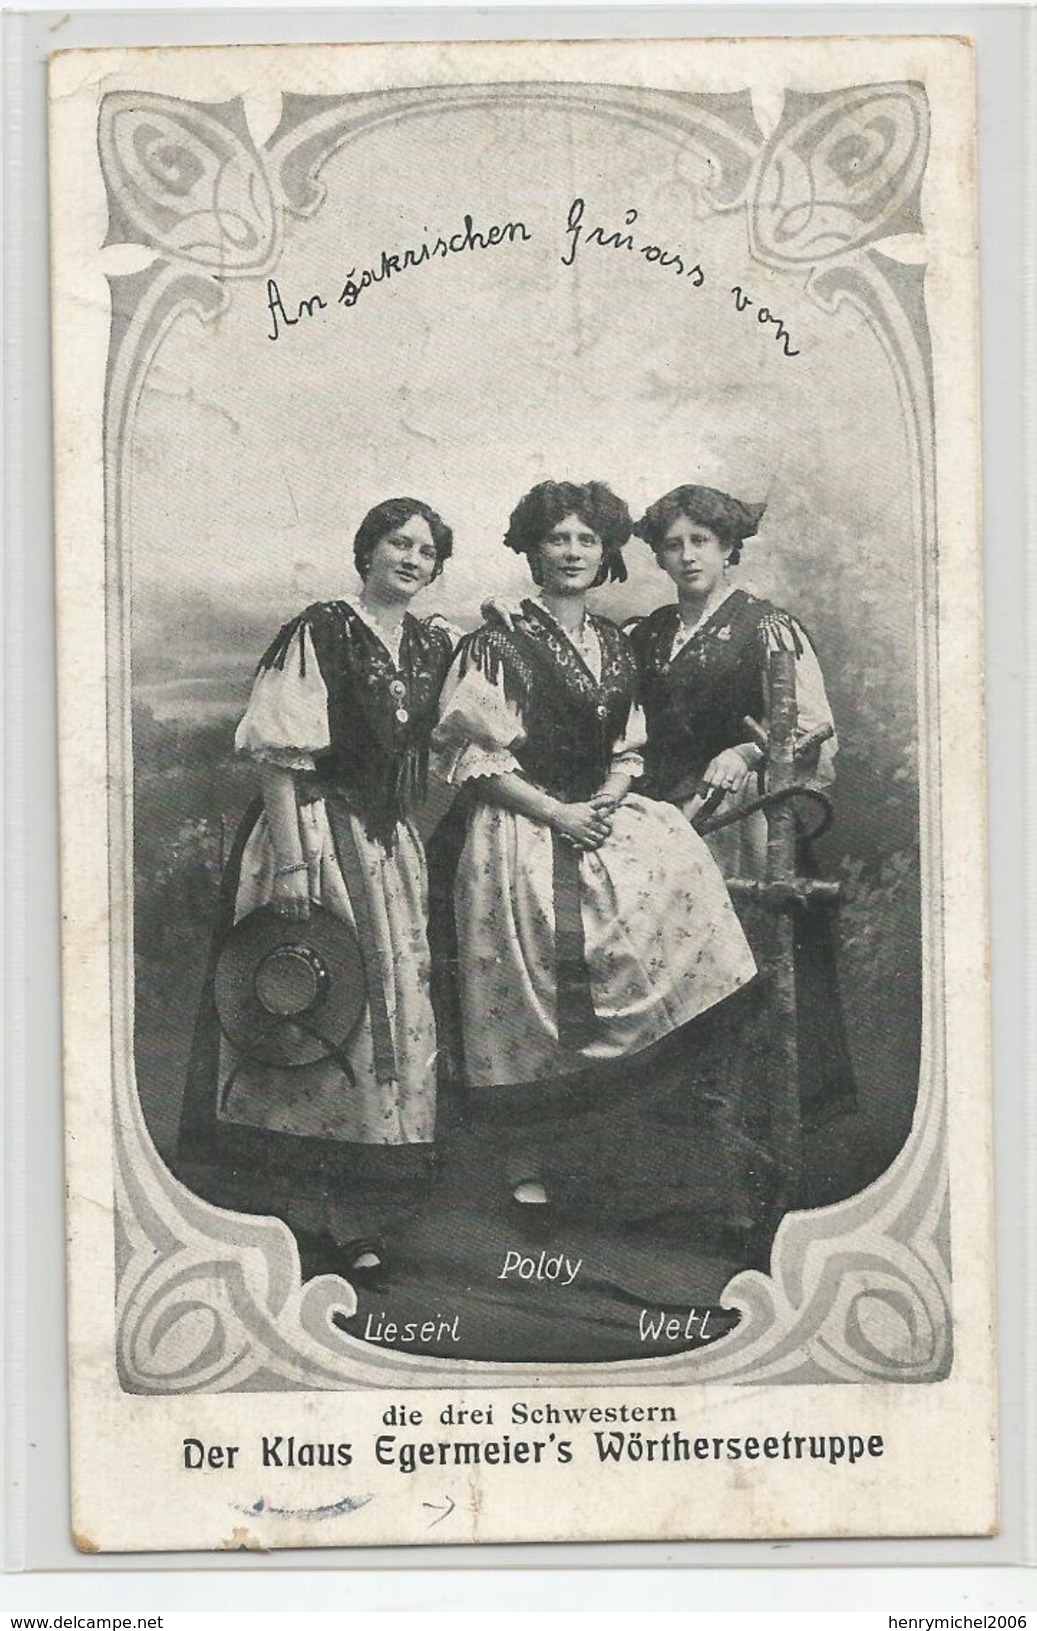 67 Bas Rhin - Strasbourg Cachet Strassburg 1910 Femmes Der Klaus Ergermeir's Wortherseetruppe Die Drei Schwestern - Strasbourg